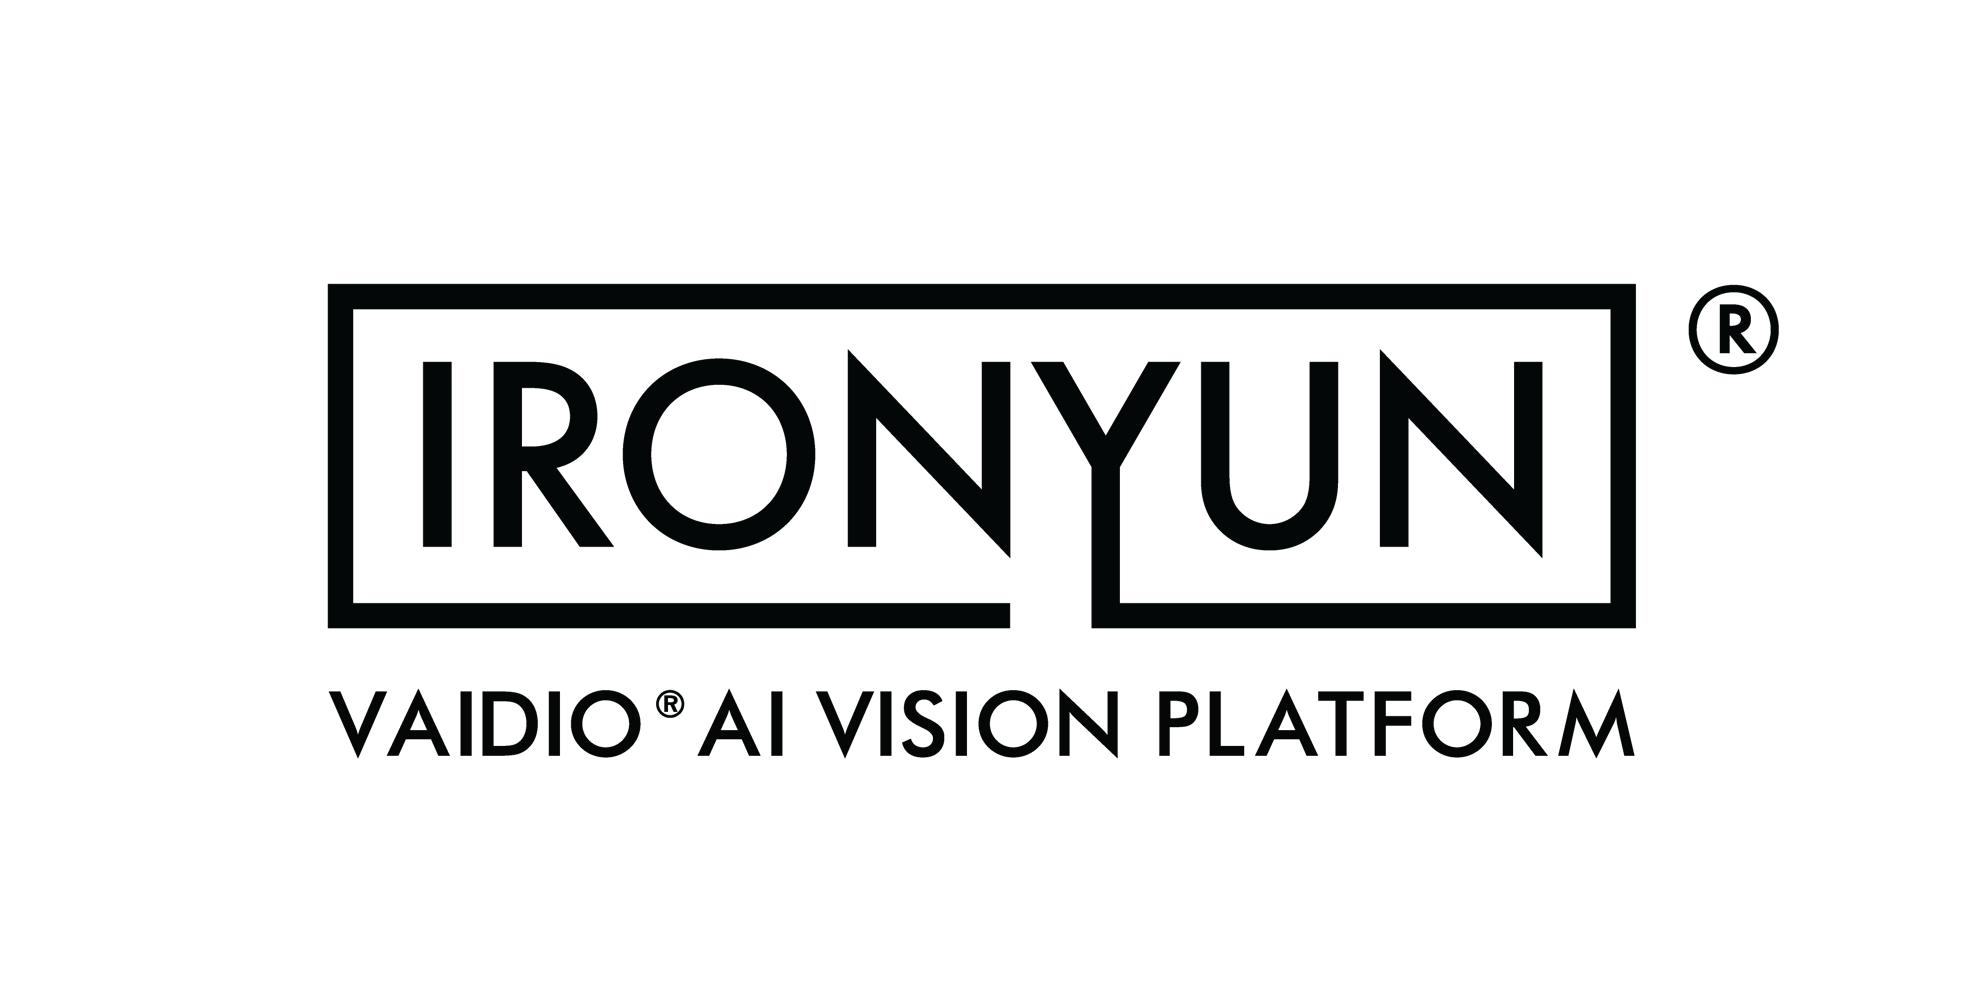 IronYun Logo_Vaidio_Black